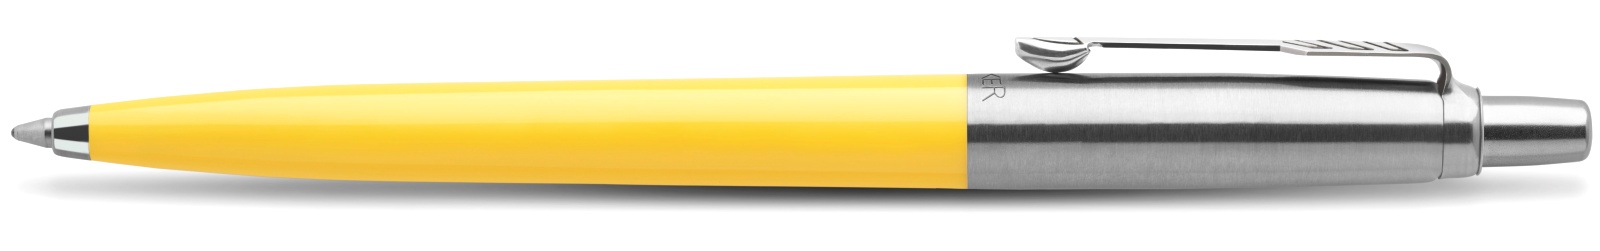 Набор: Шариковая ручка Parker Jotter K60 Originals Color Plastic 2019, Yellow СT + Ежедневник, недатированный, А5, жёлтый, фото 5